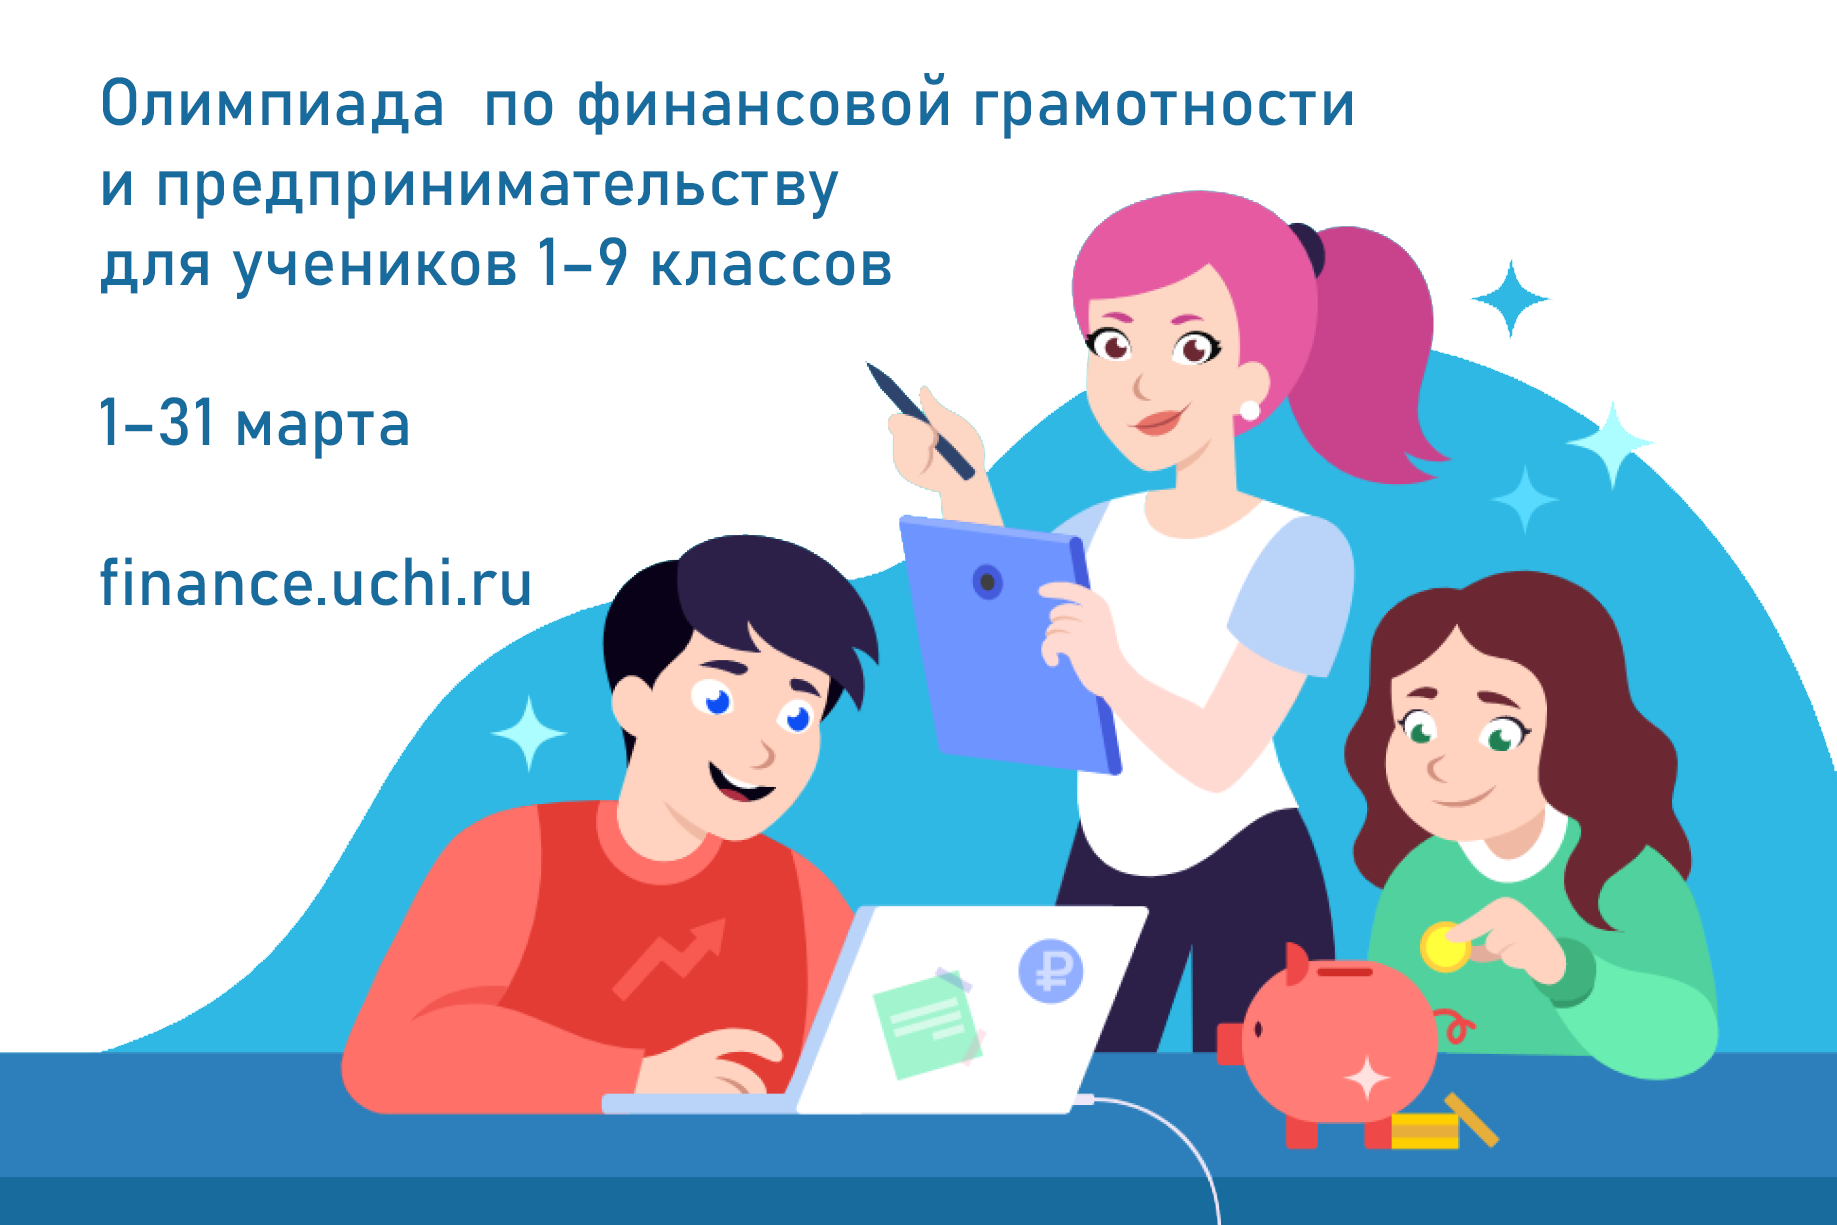 Всероссийская онлайн олимпиада по финансовой грамотности для учащихся 1-9 классов.